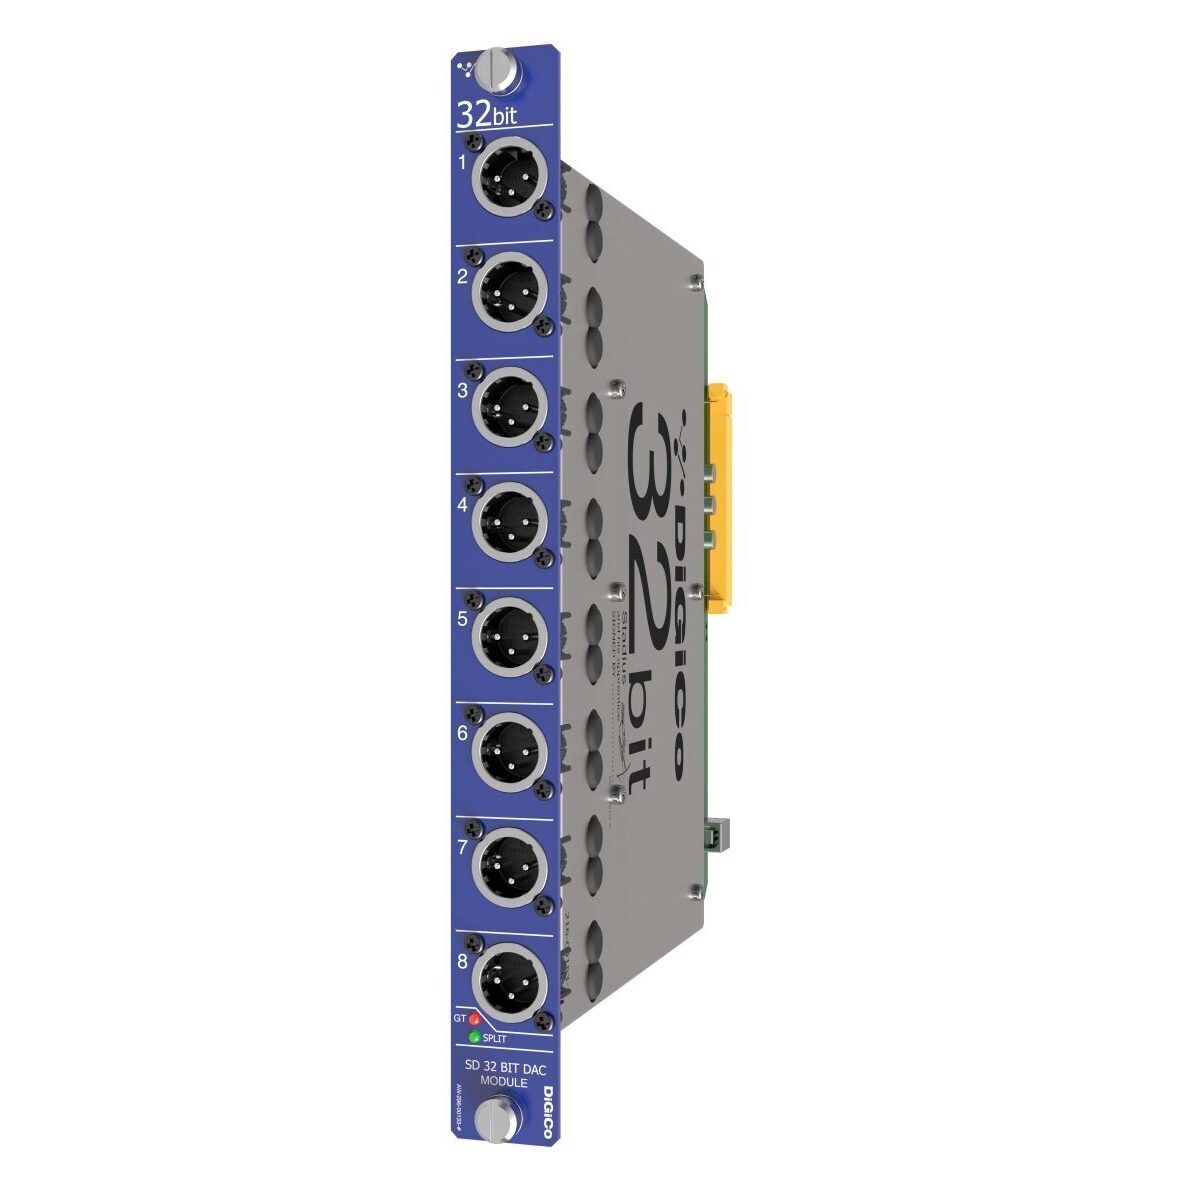 Digico 32bit DAC sd-rack module 8x output XLR